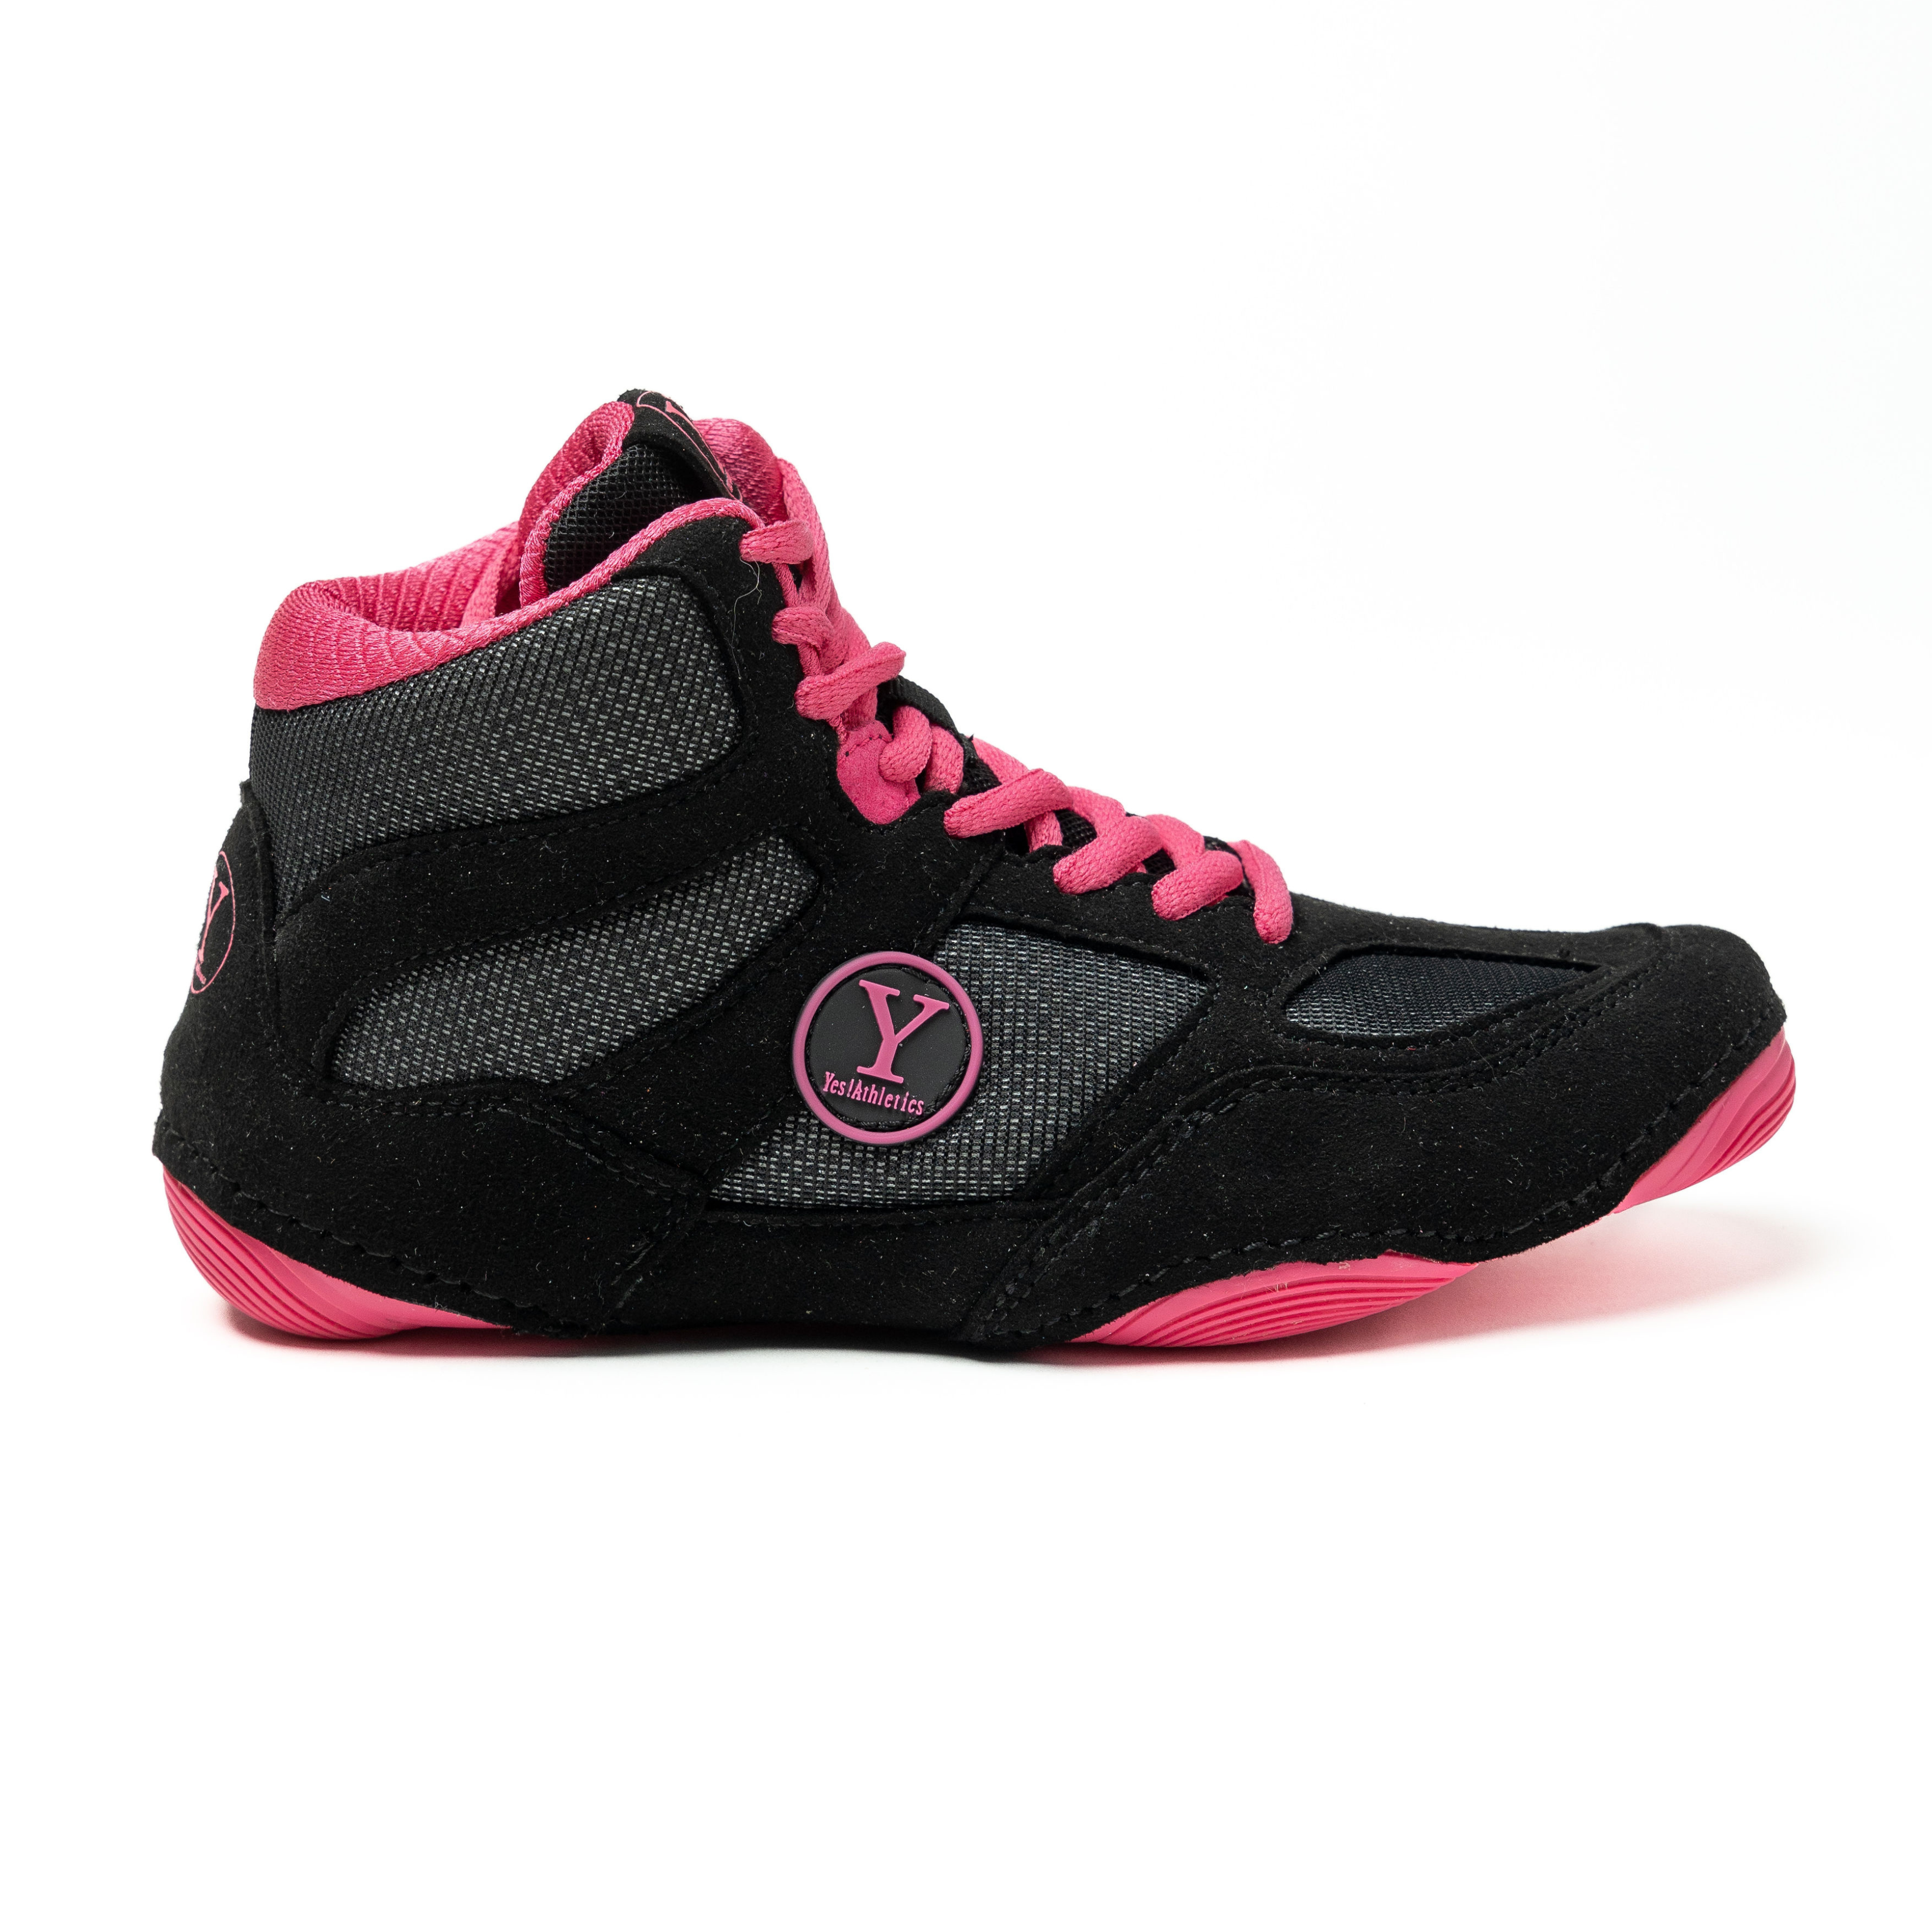 Black and pink girls wrestling shoe